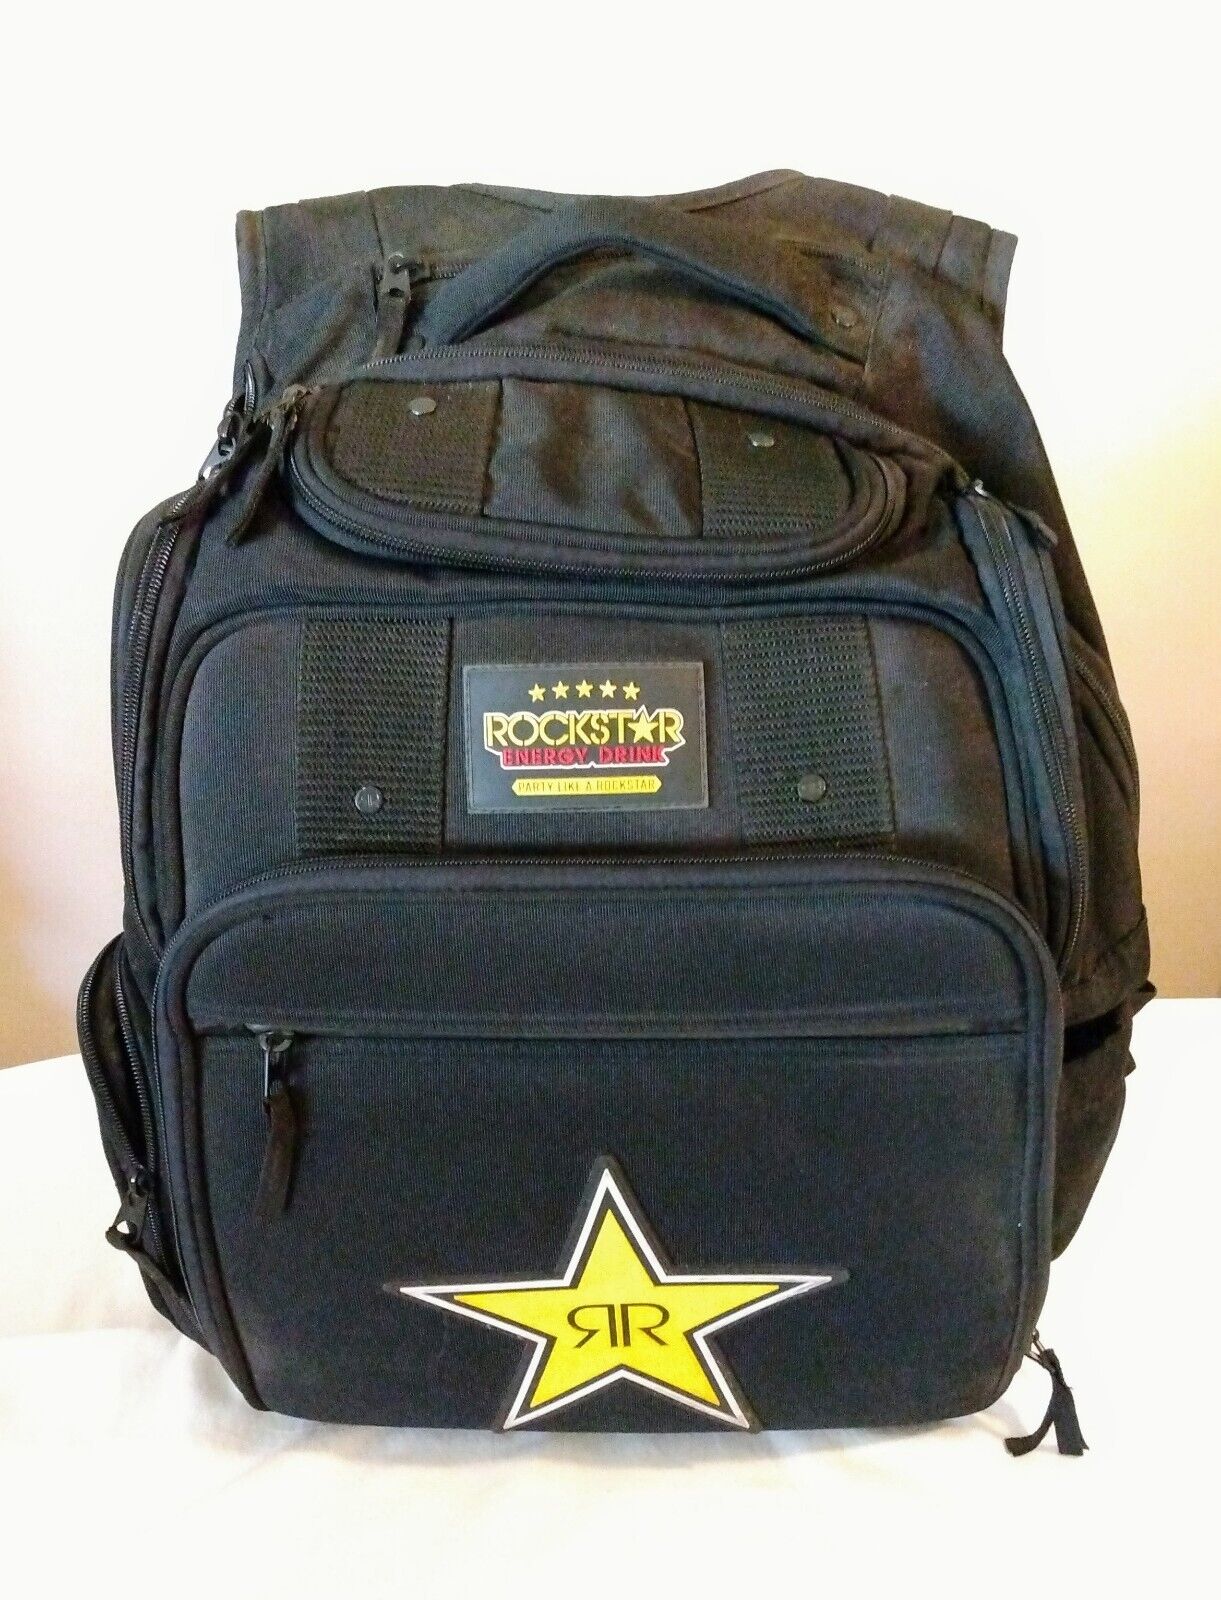 ROCKSTAR Energy Drink Black Backpack Travel Bag Carry On Laptop Pockets